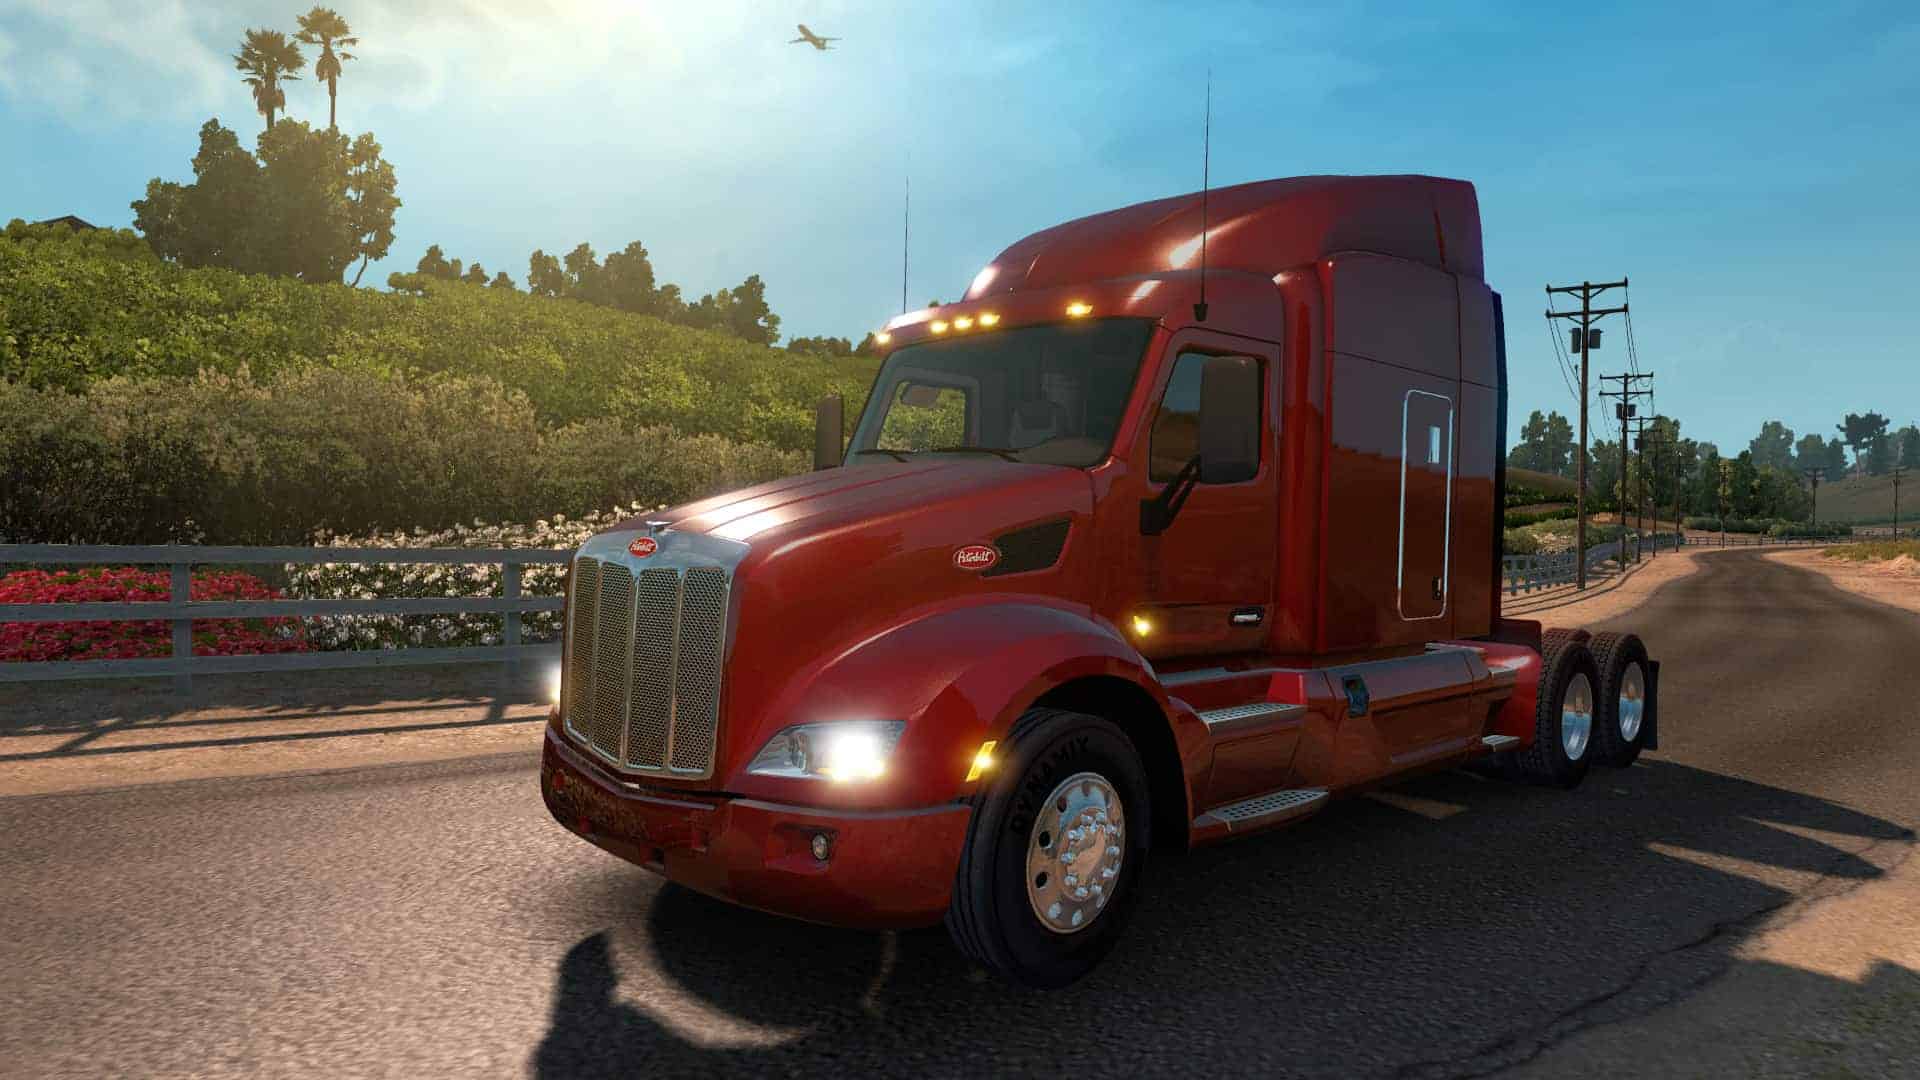 free download american truck simulator 2